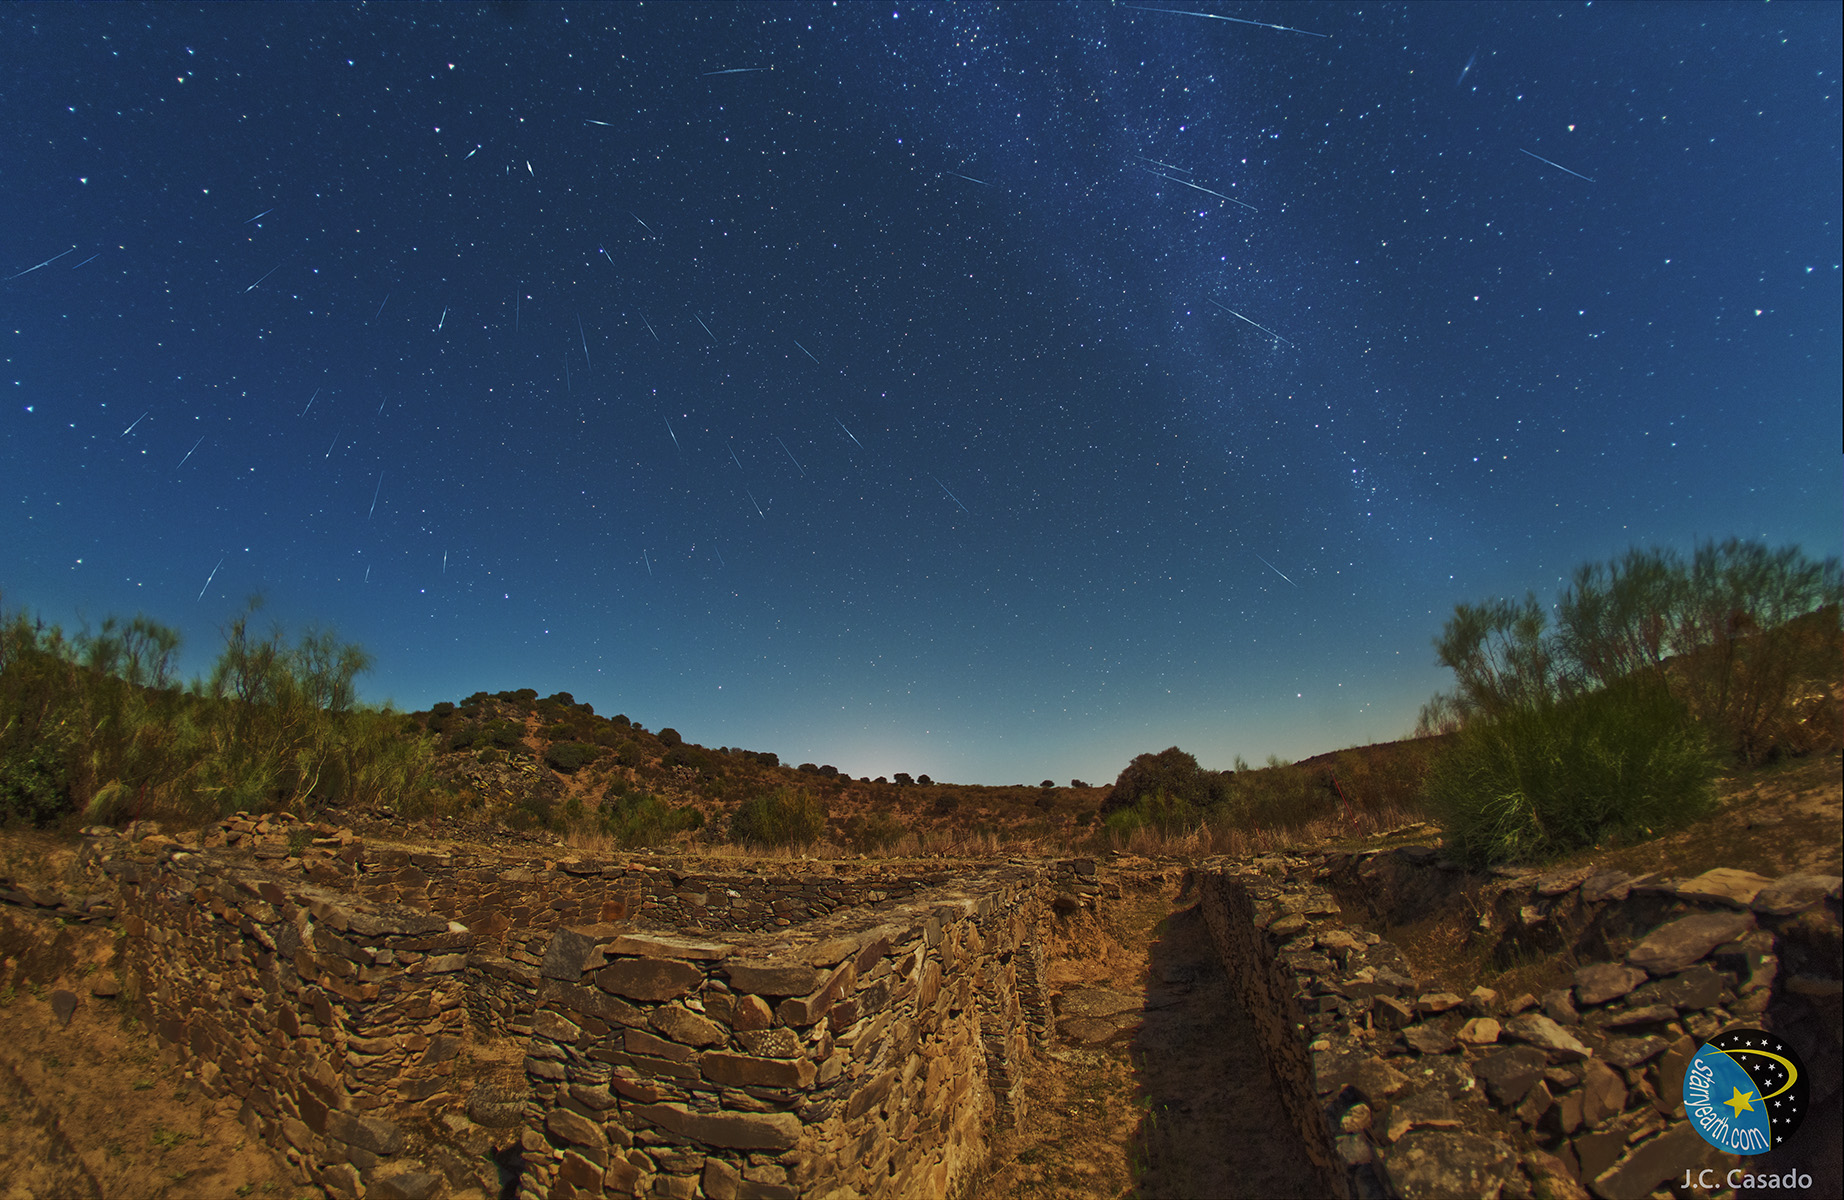 2011 Draconids meteor outburst photographed by Juan Carlos Casado from Spain. Credit: Juan Carlos Casado